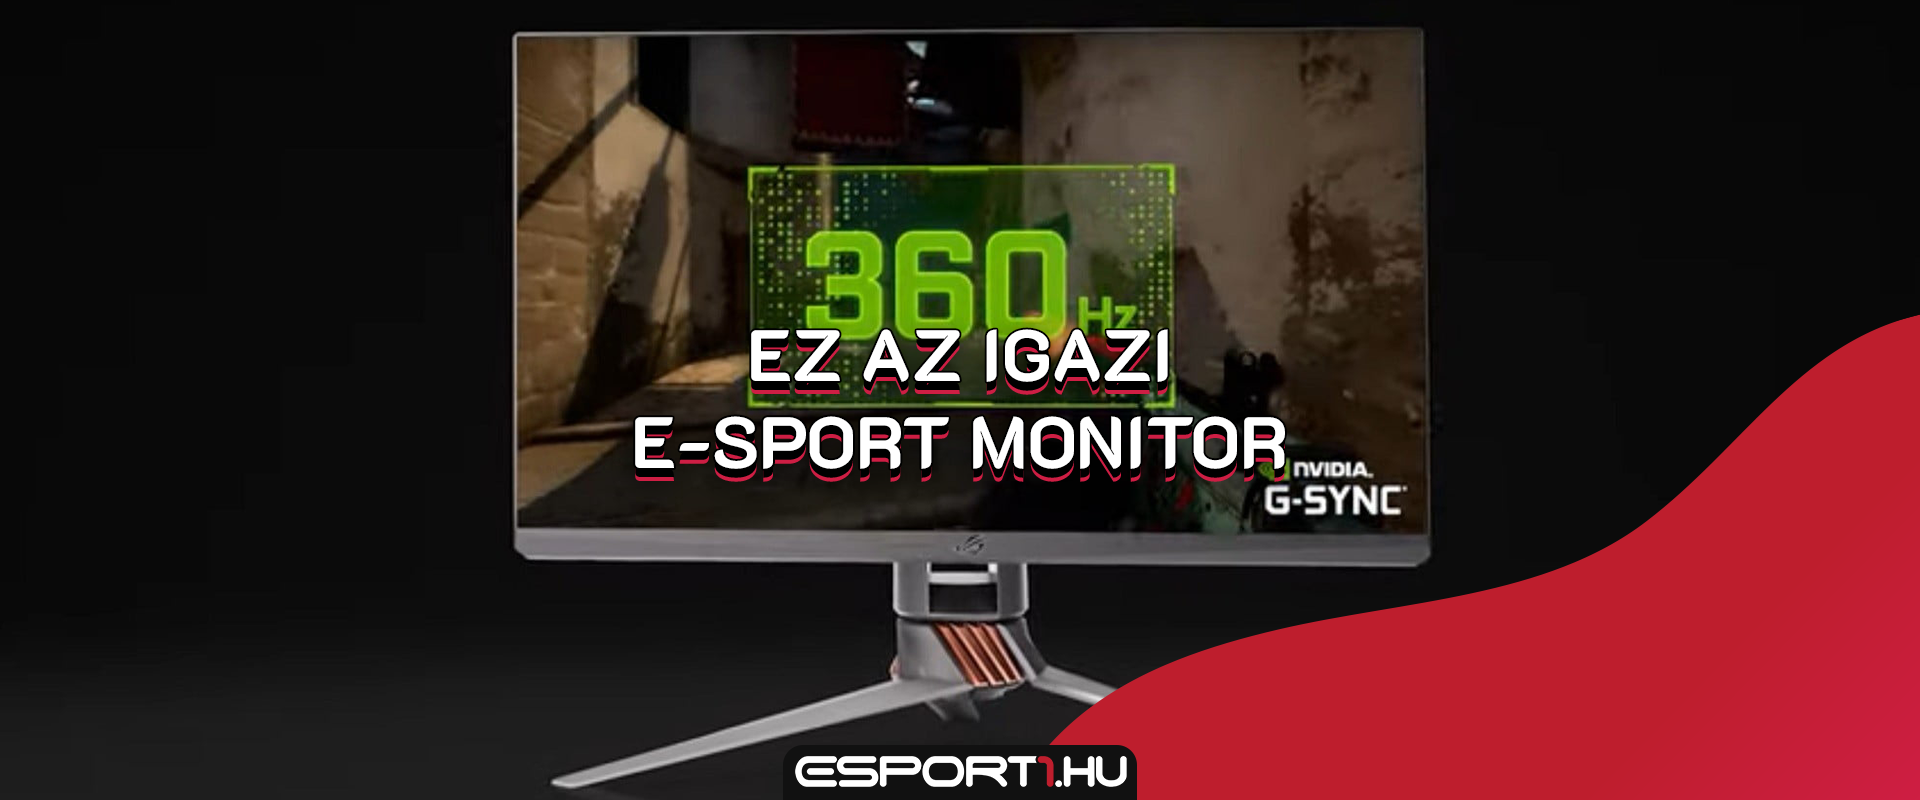 E-sportolóknak készítették a világ első 360 Hz-es monitorát